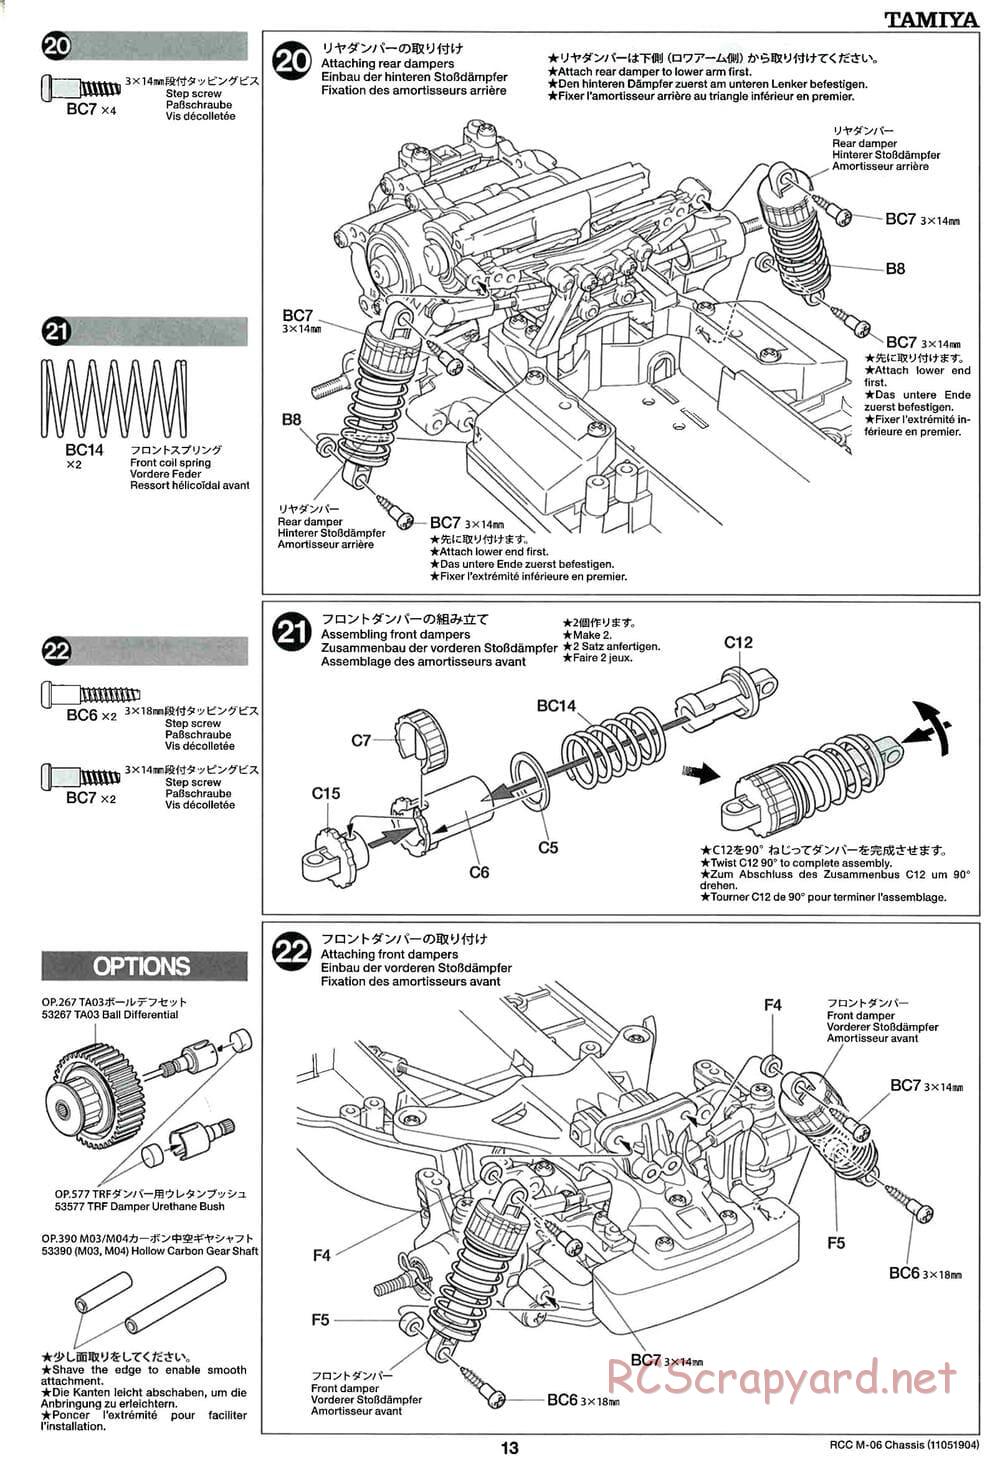 Tamiya - M-06 Chassis - Manual - Page 13